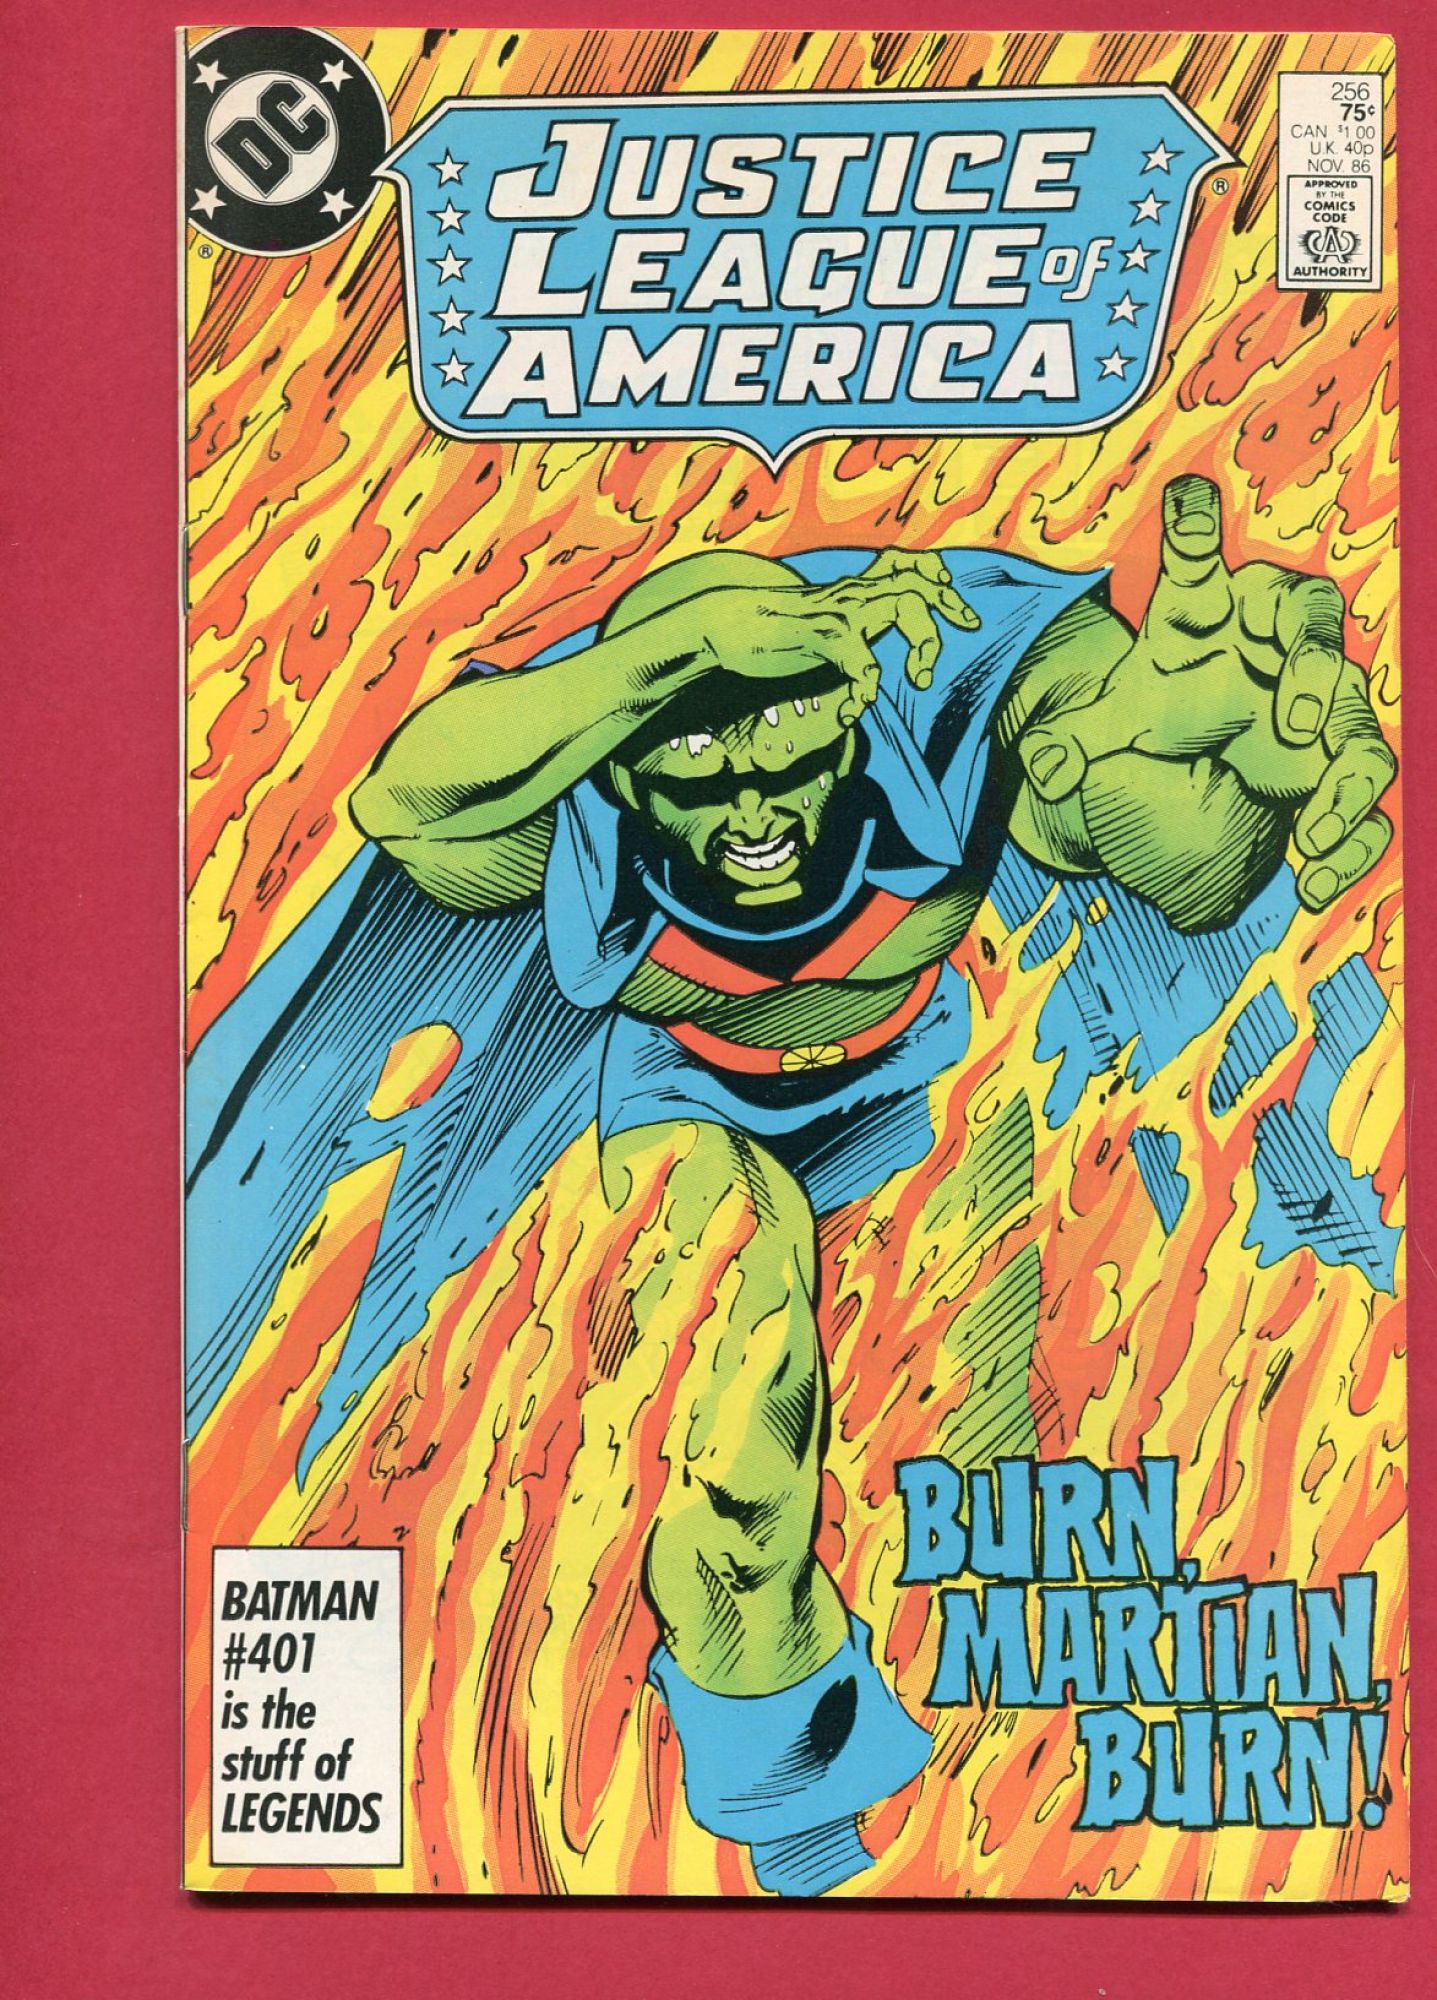 Justice League of America (Volume 1 1960) #256, Nov 1986, 9.2 NM-